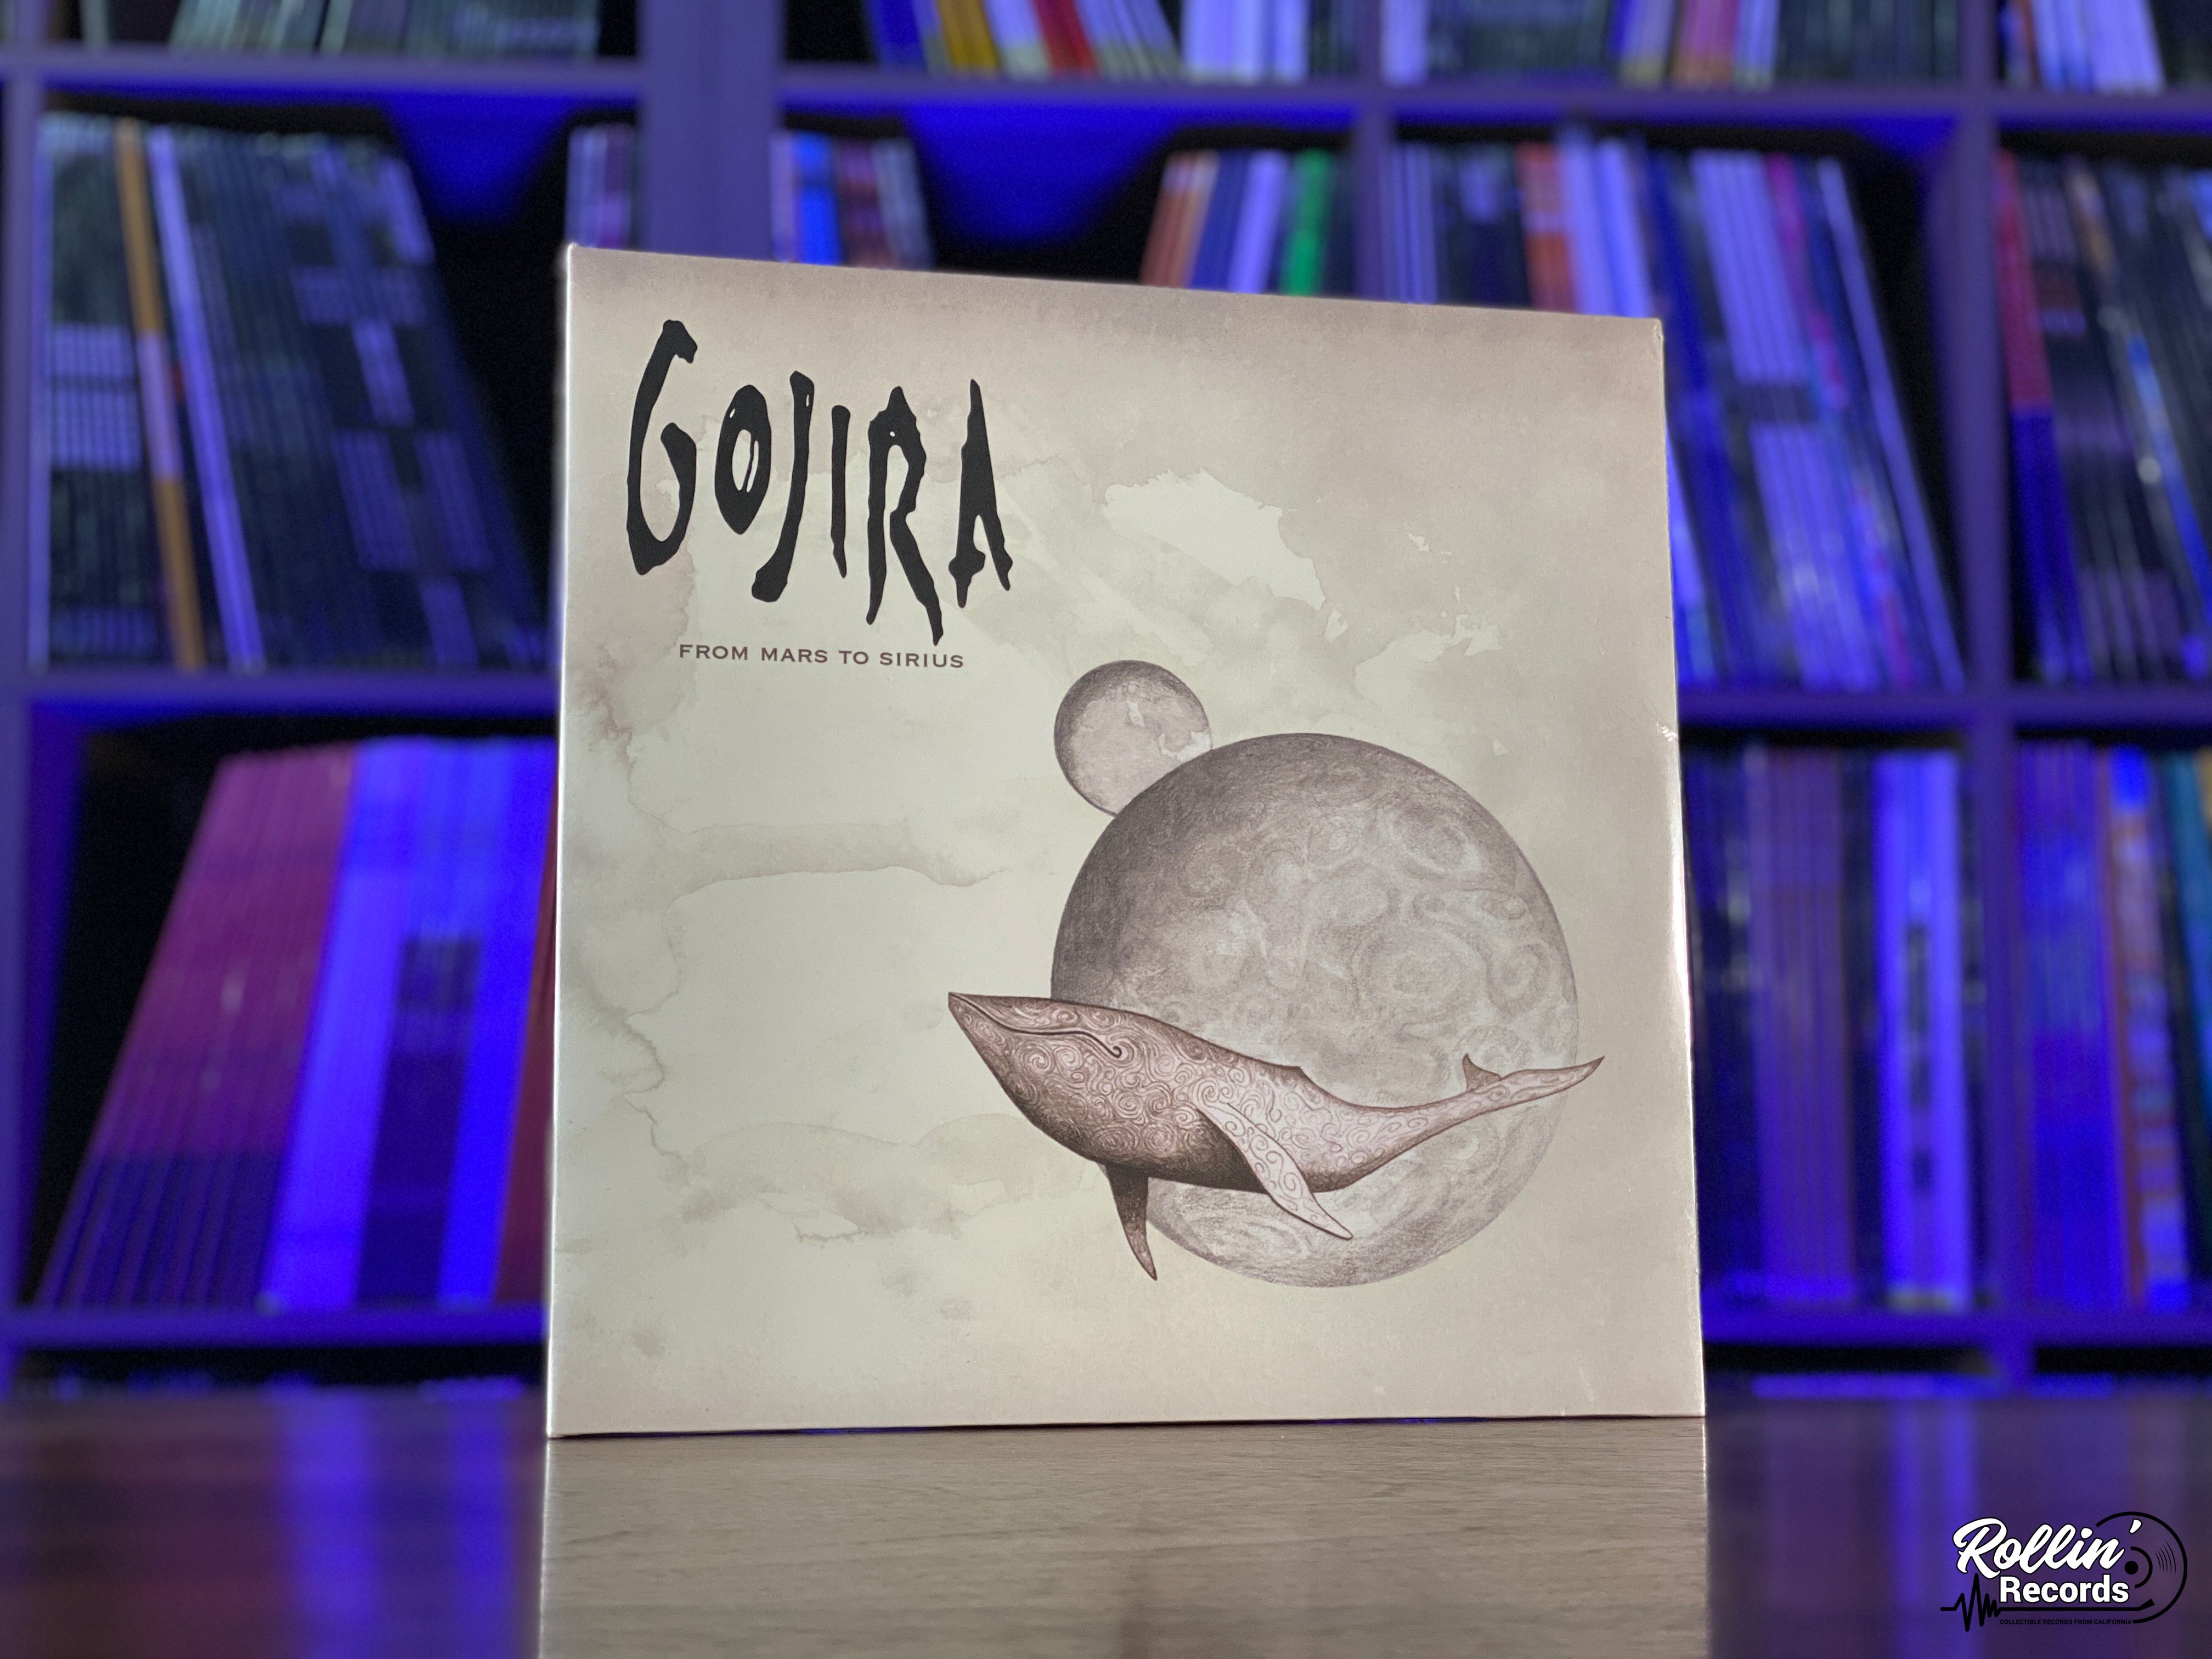 Uganda Det Dripping Gojira - From Mars To Sirius – Rollin' Records